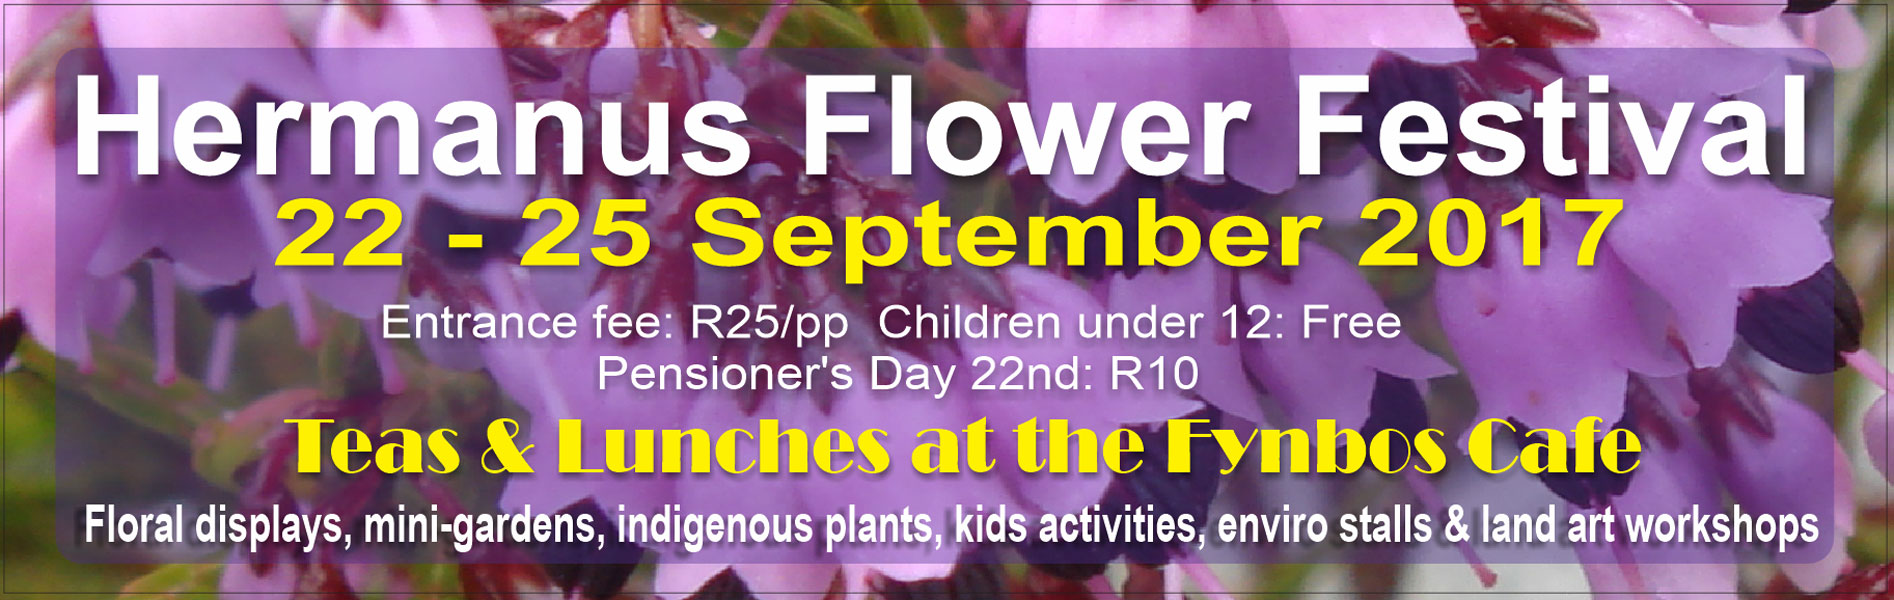 60th Hermanus Flower Festival at Fernkloof gardens, Hermanus - 22nd to 25th September 2017